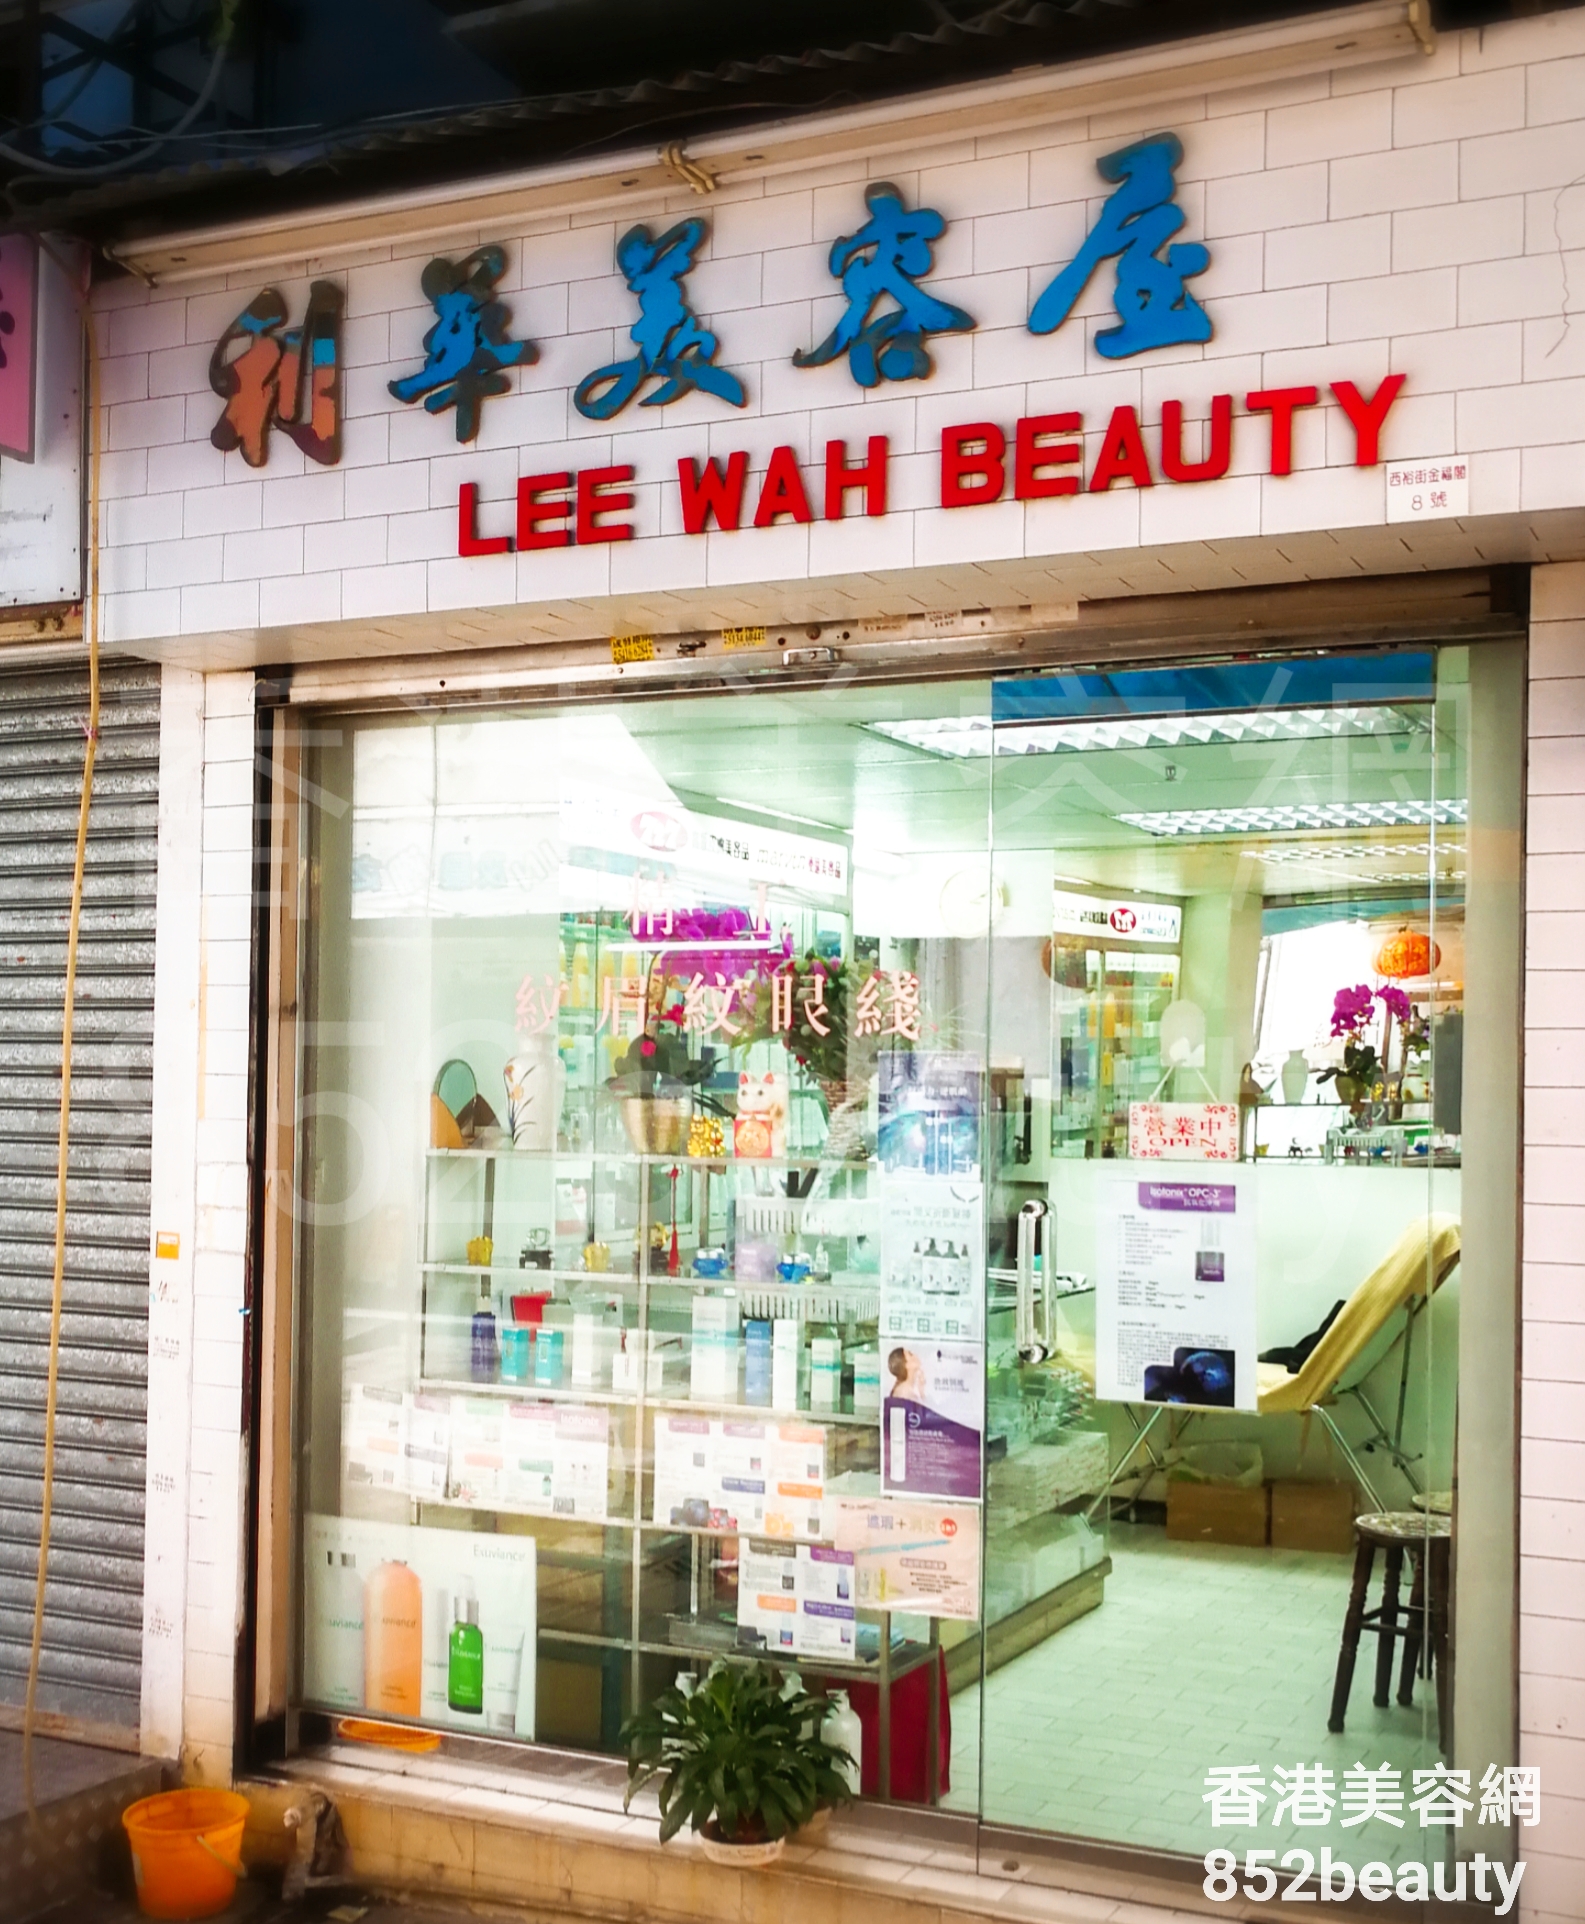 香港美容網 Hong Kong Beauty Salon 美容院 / 美容師: 利華美容屋